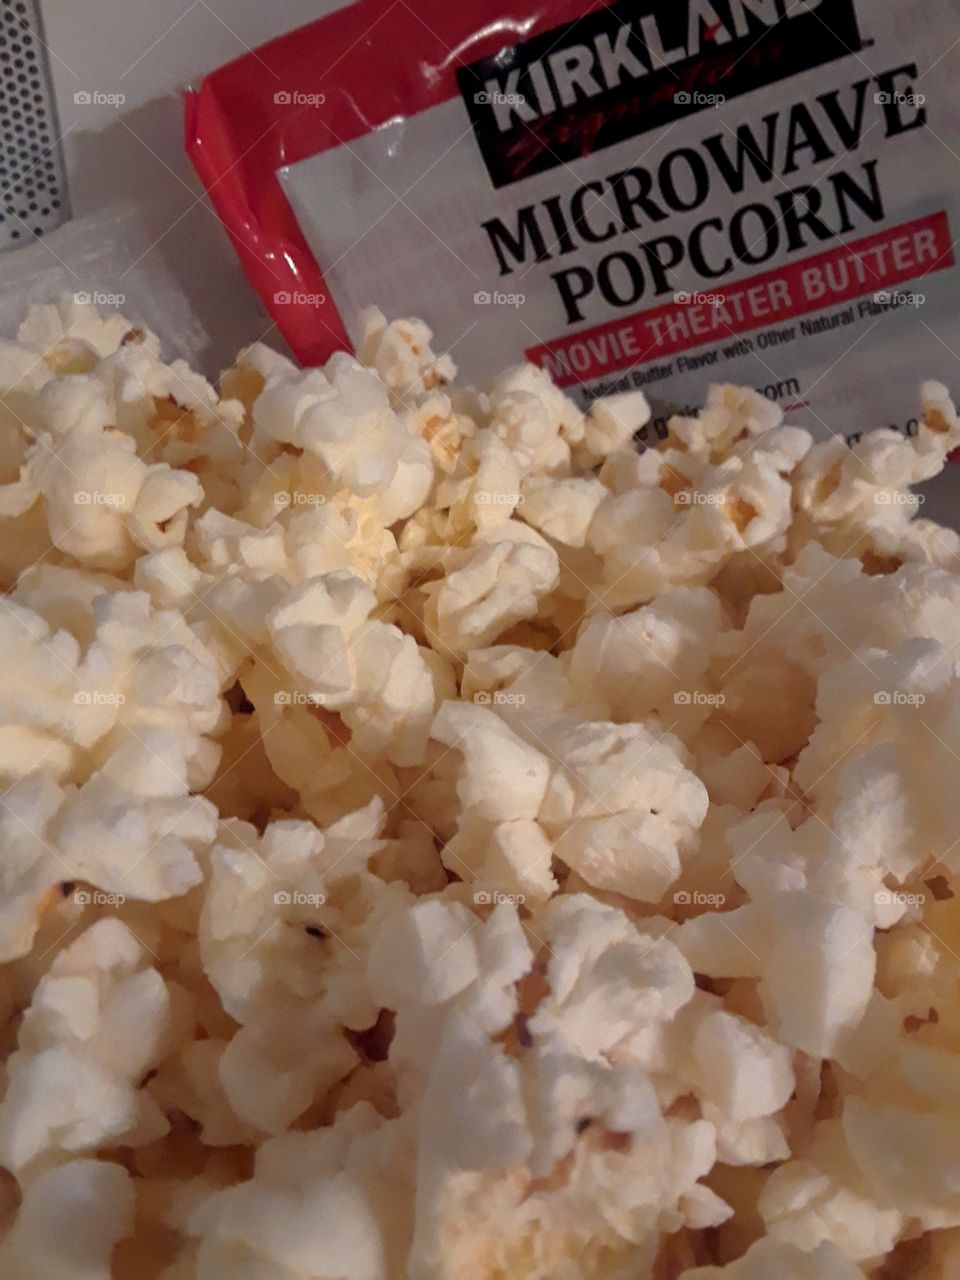 love me some delicious popcorn